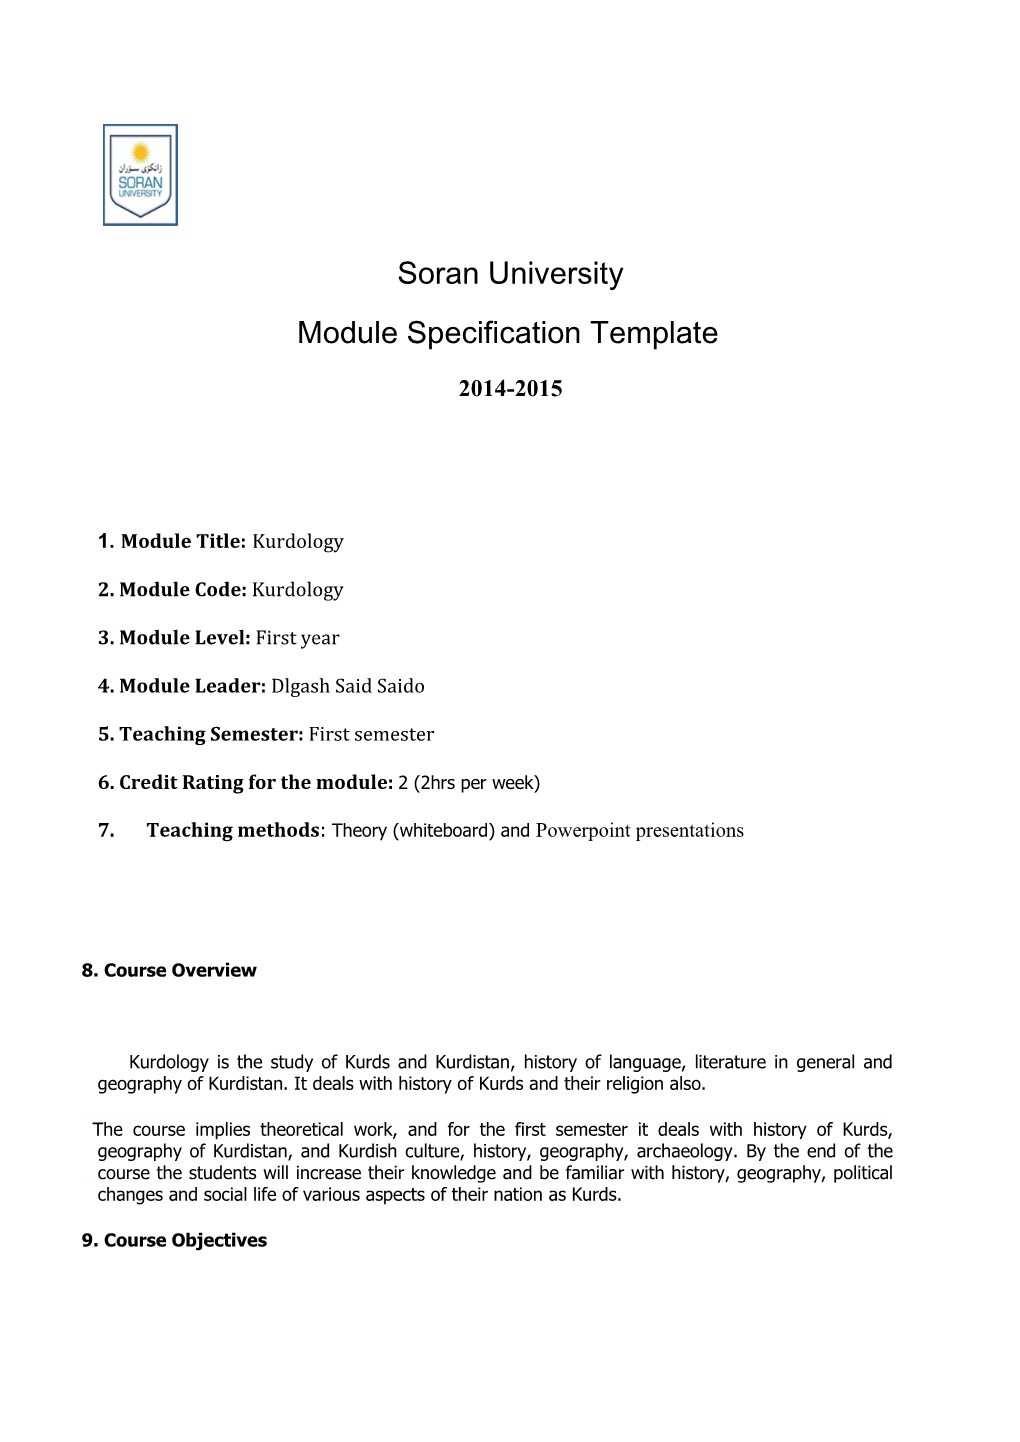 Soran University Module Specification Template